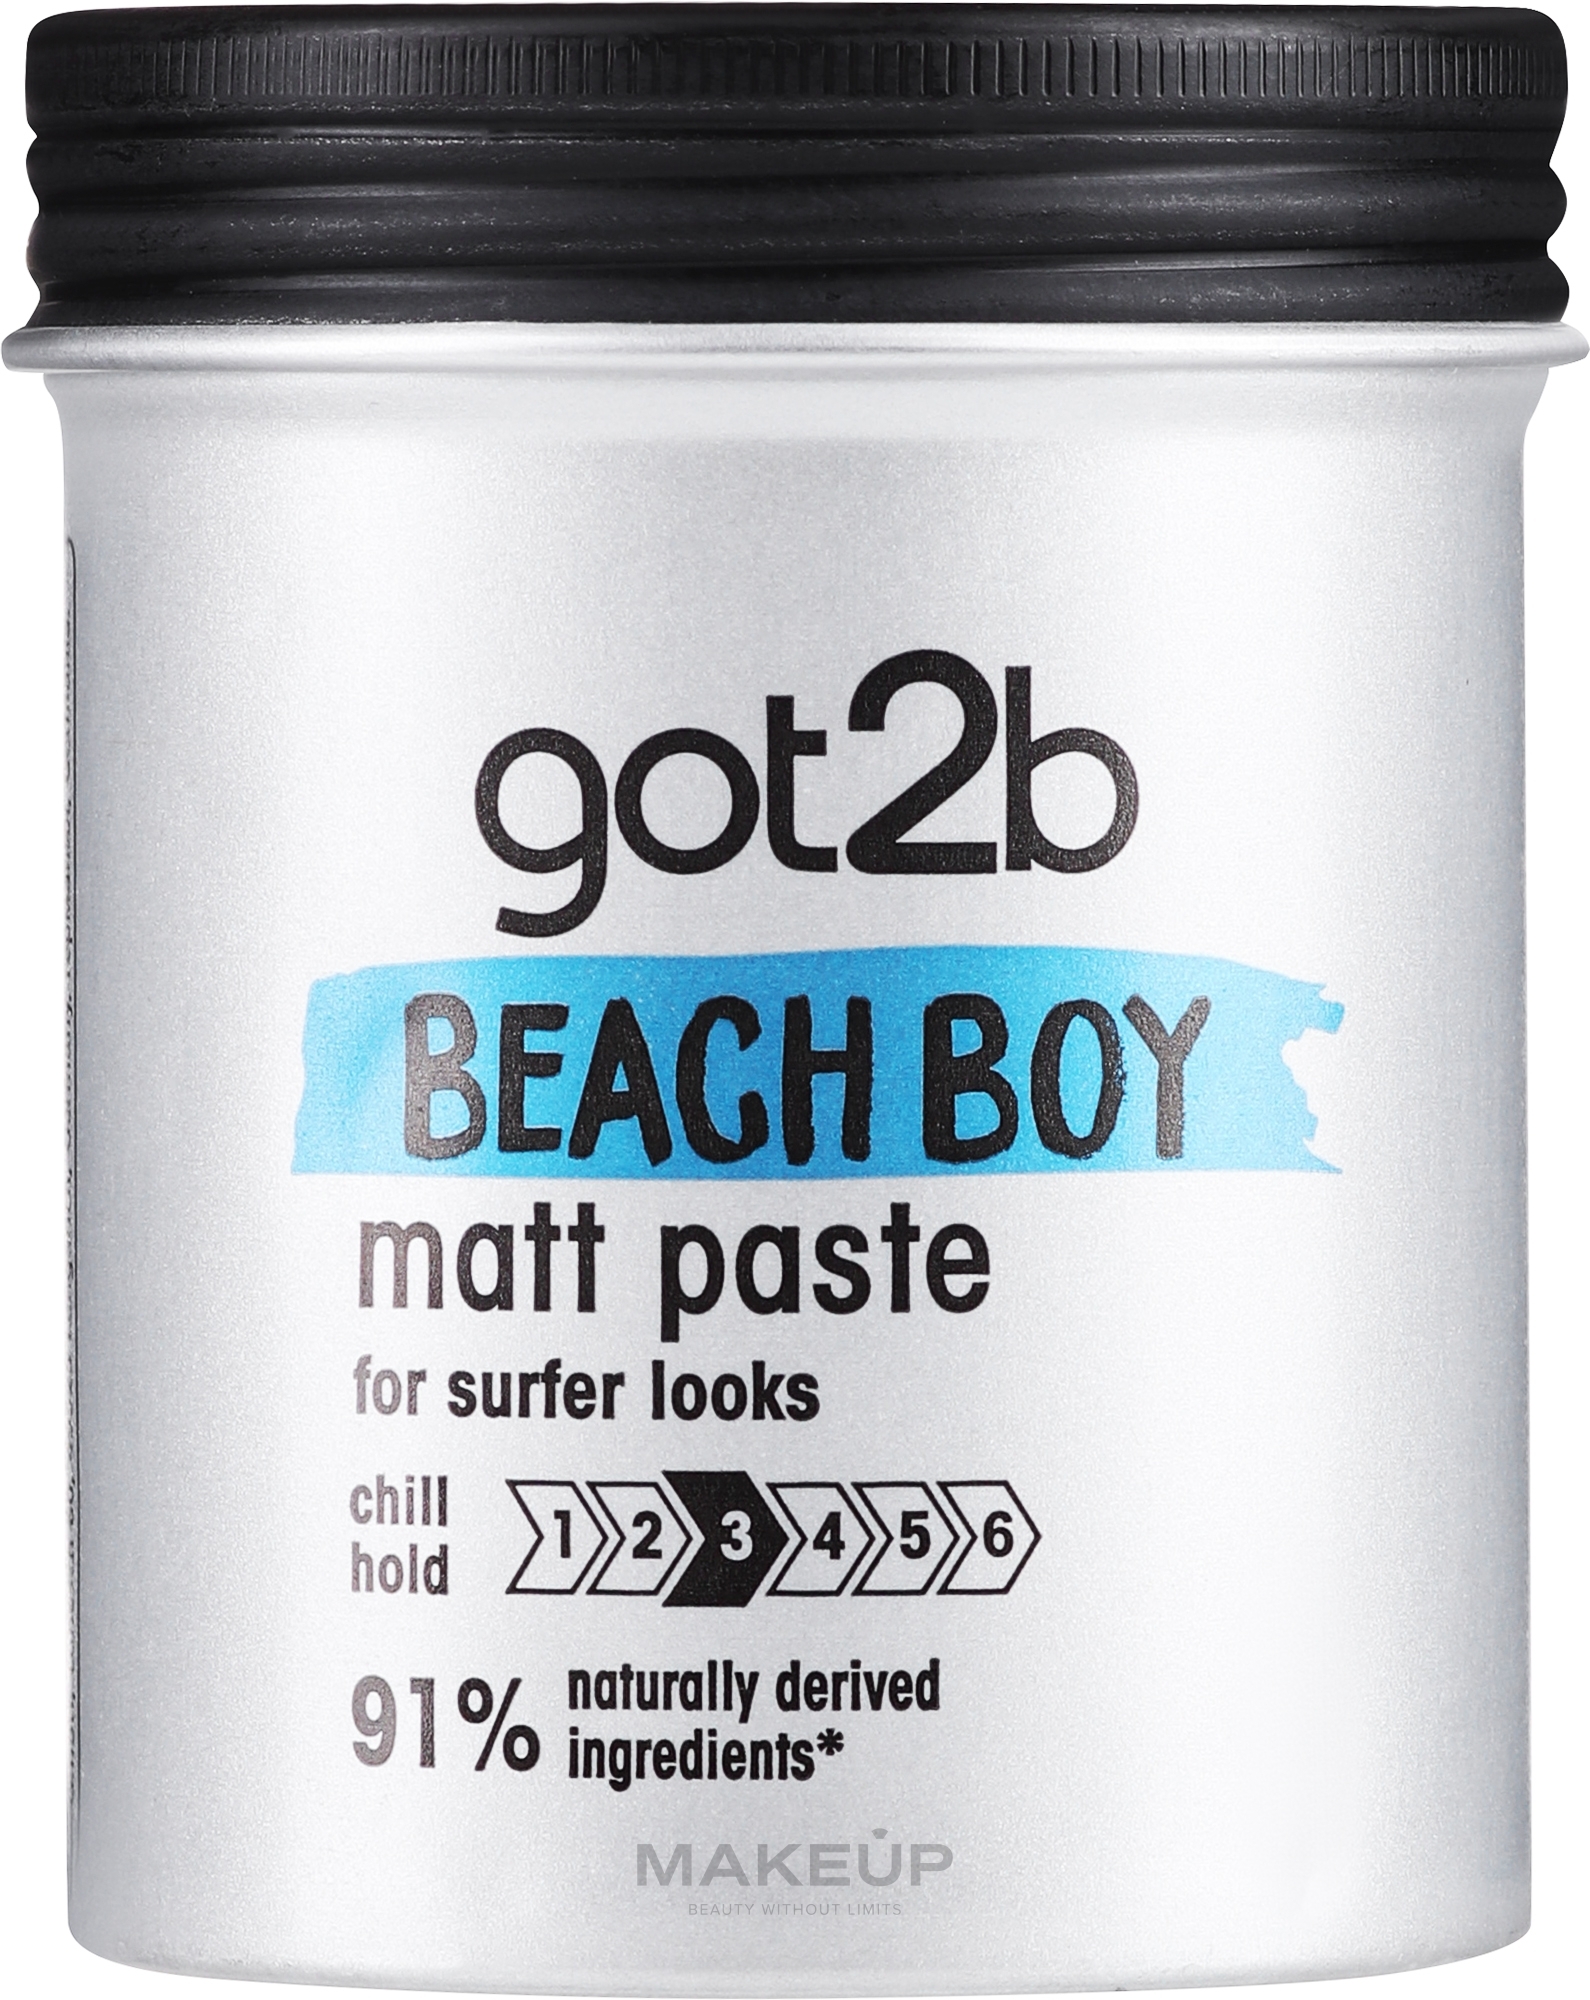 Matująca pasta do włosów - Got2b Beach Boy Matt Paste Chill Hold 3 91% Naturally Derived Ingredients — Zdjęcie 100 ml